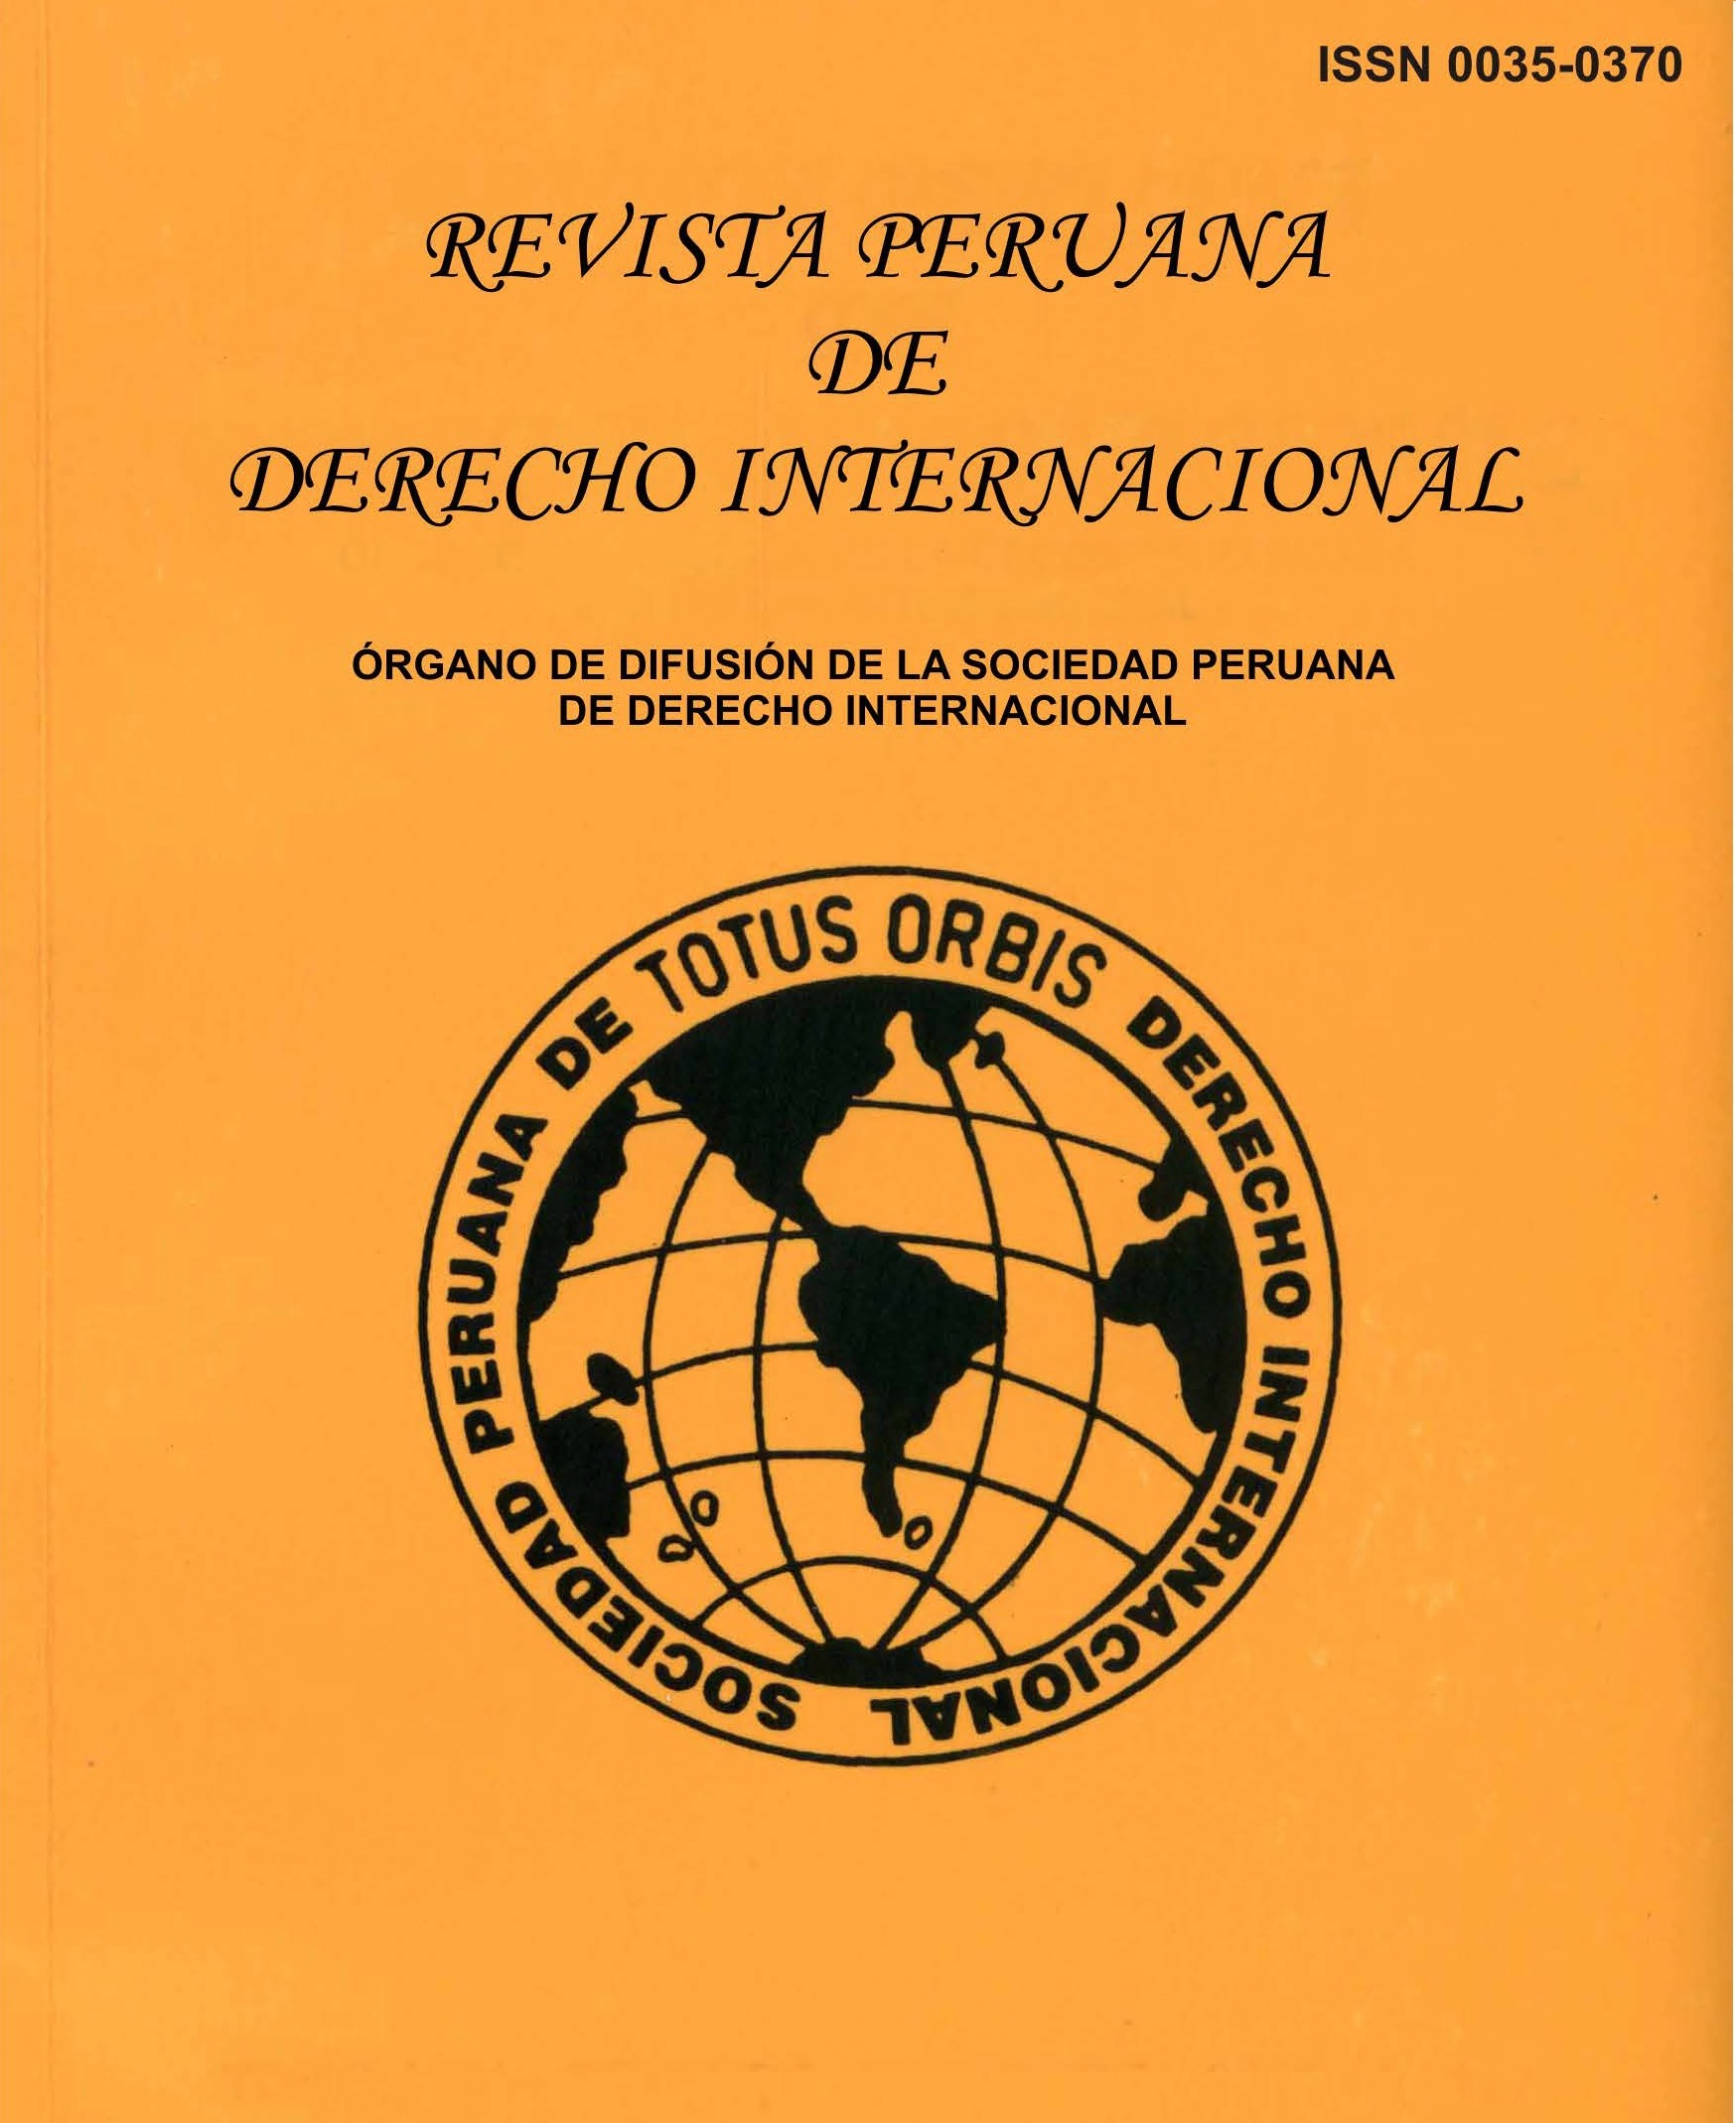 					Ver Tomo LXIX Enero-Abril 2019 N° 161, Revista Peruana de Derecho Internacional
				